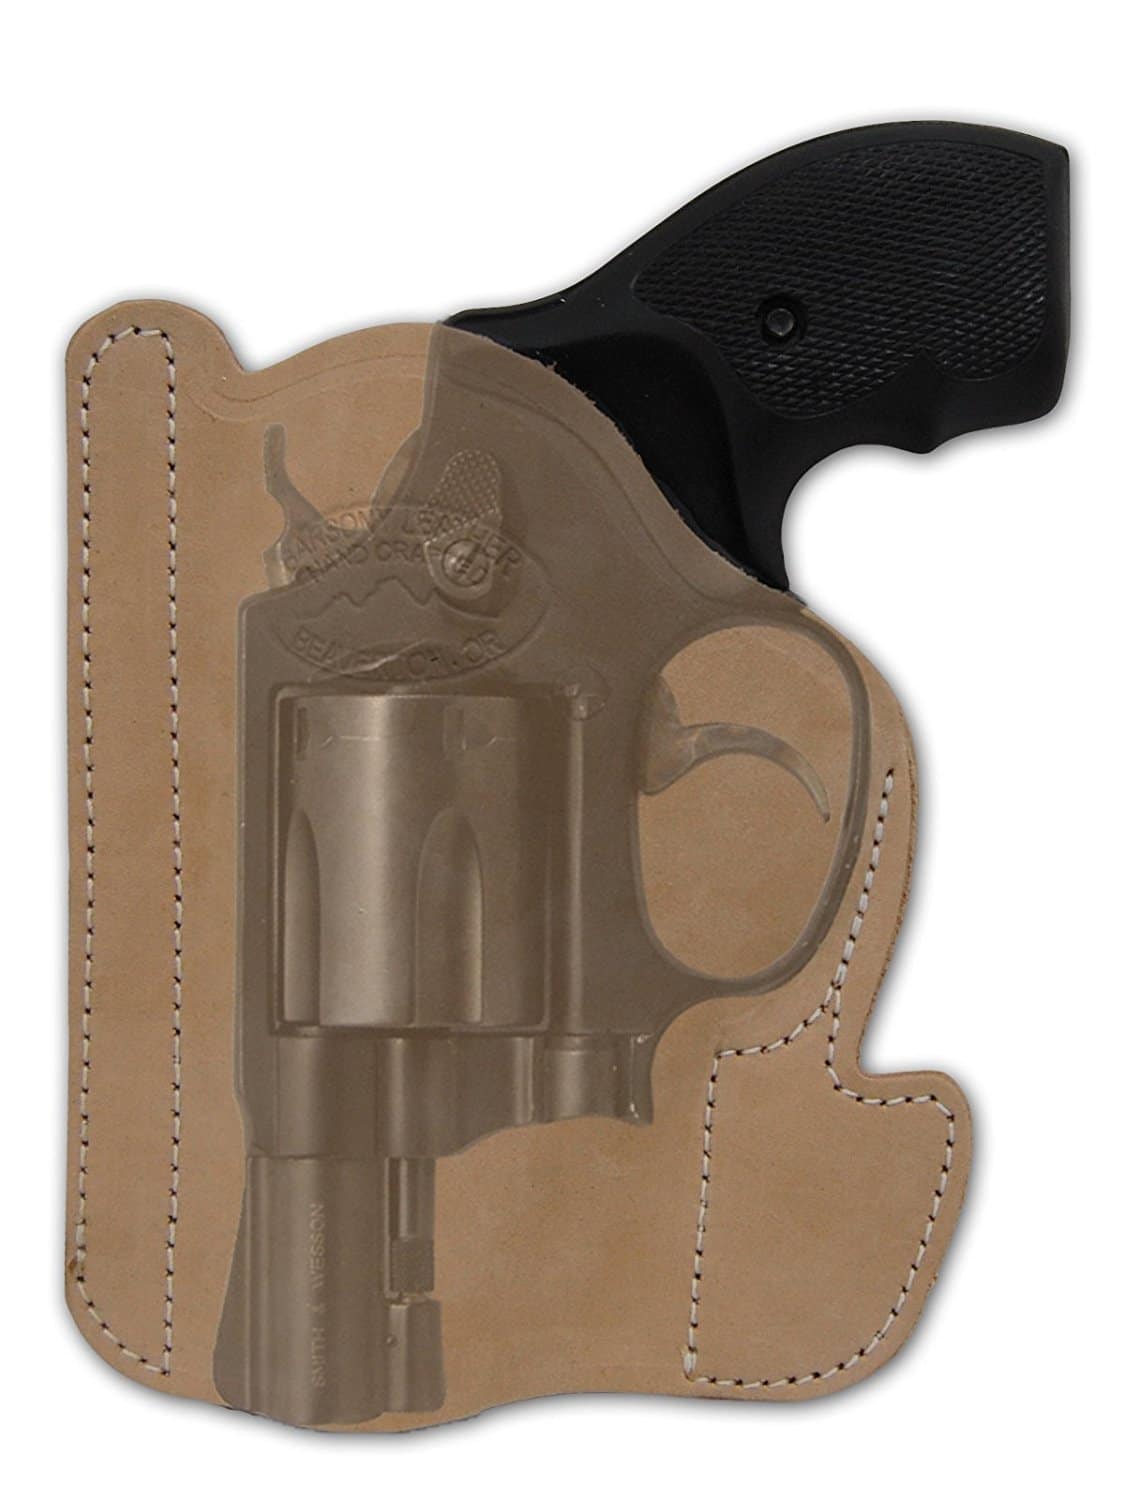 Ruger LCR Pocket Holster RH LH Concealed Carry,This inside the pocket holst...